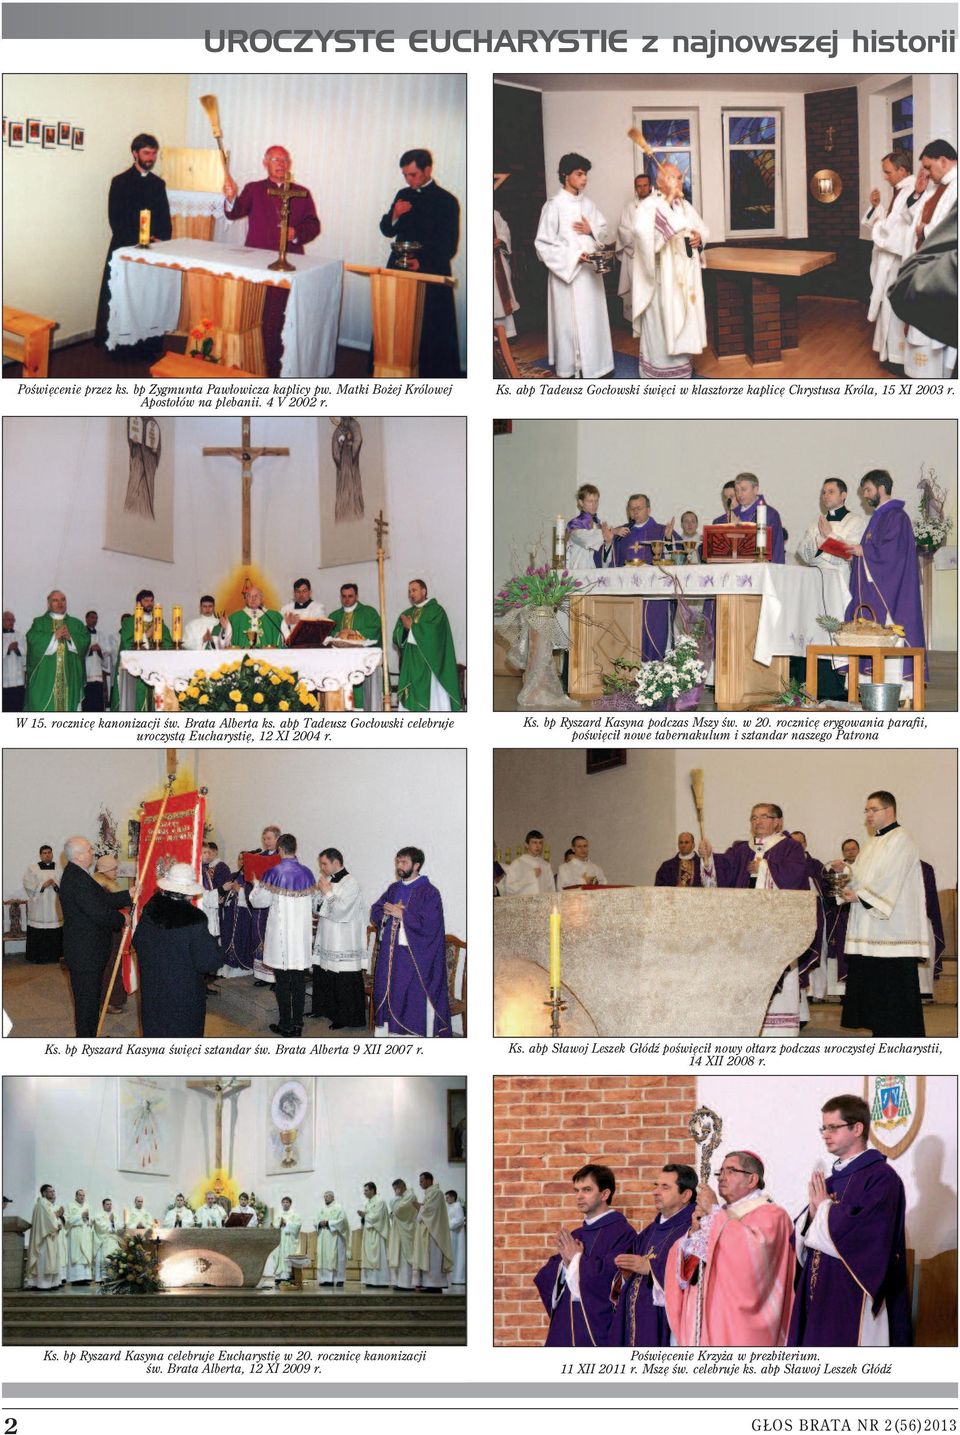 Ks. bp Ryszard Kasyna podczas Mszy św. w 20. rocznicę erygowania parafii, poświęcił nowe tabernakulum i sztandar naszego Patrona Ks. bp Ryszard Kasyna święci sztandar św. Brata Alberta 9 XII 2007 r.